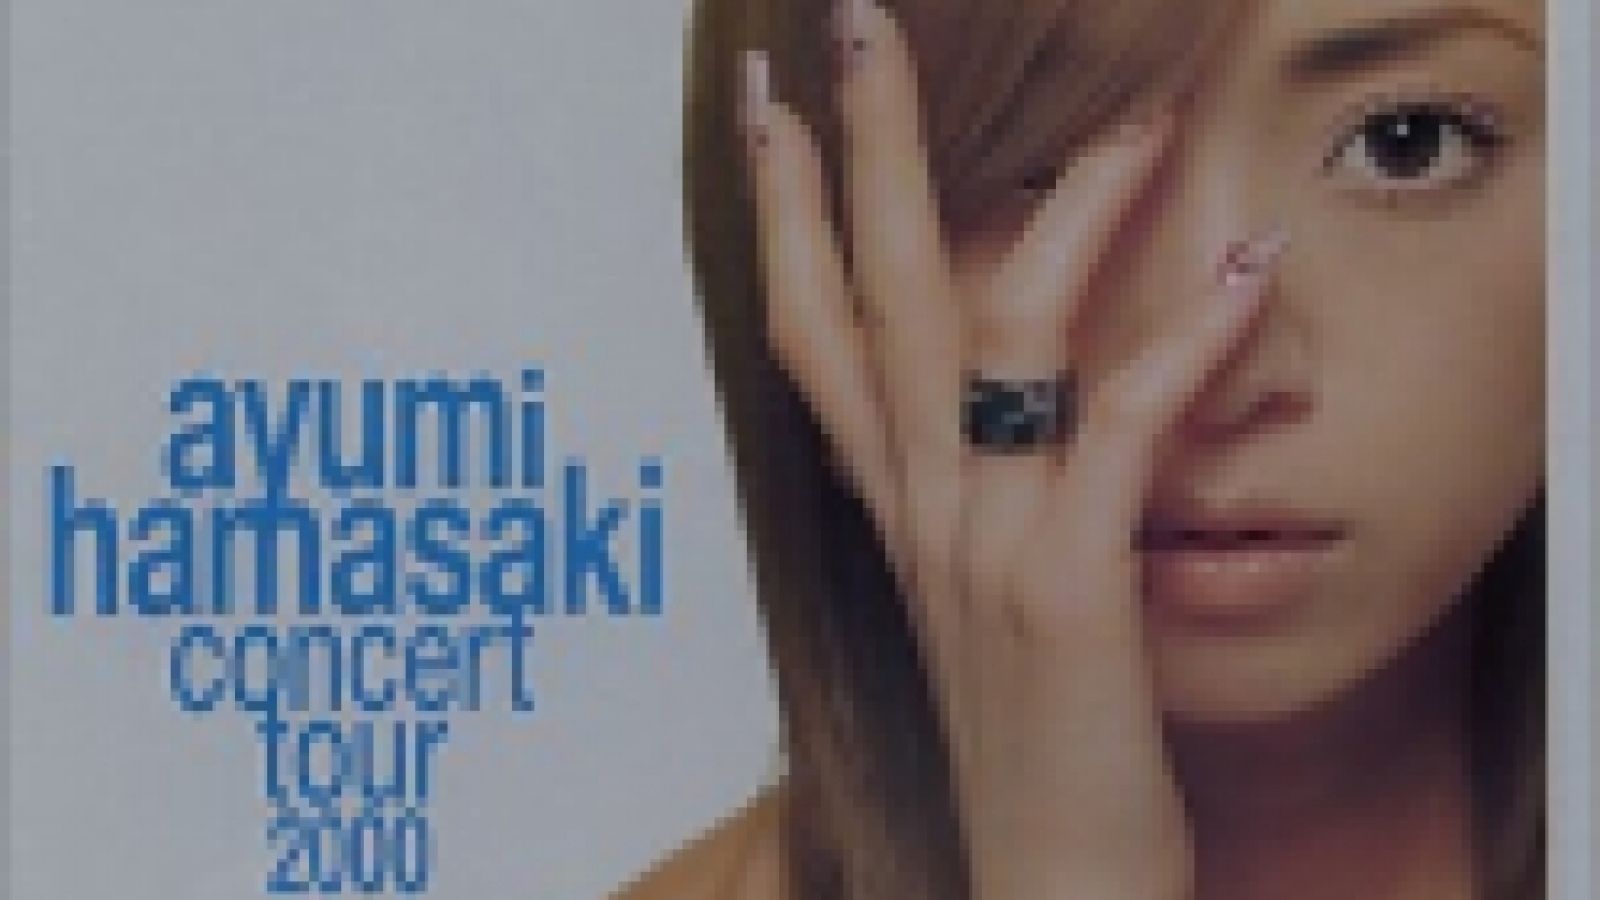 Ayumi Hamasaki - concert tour 2000 A -1- © JaME